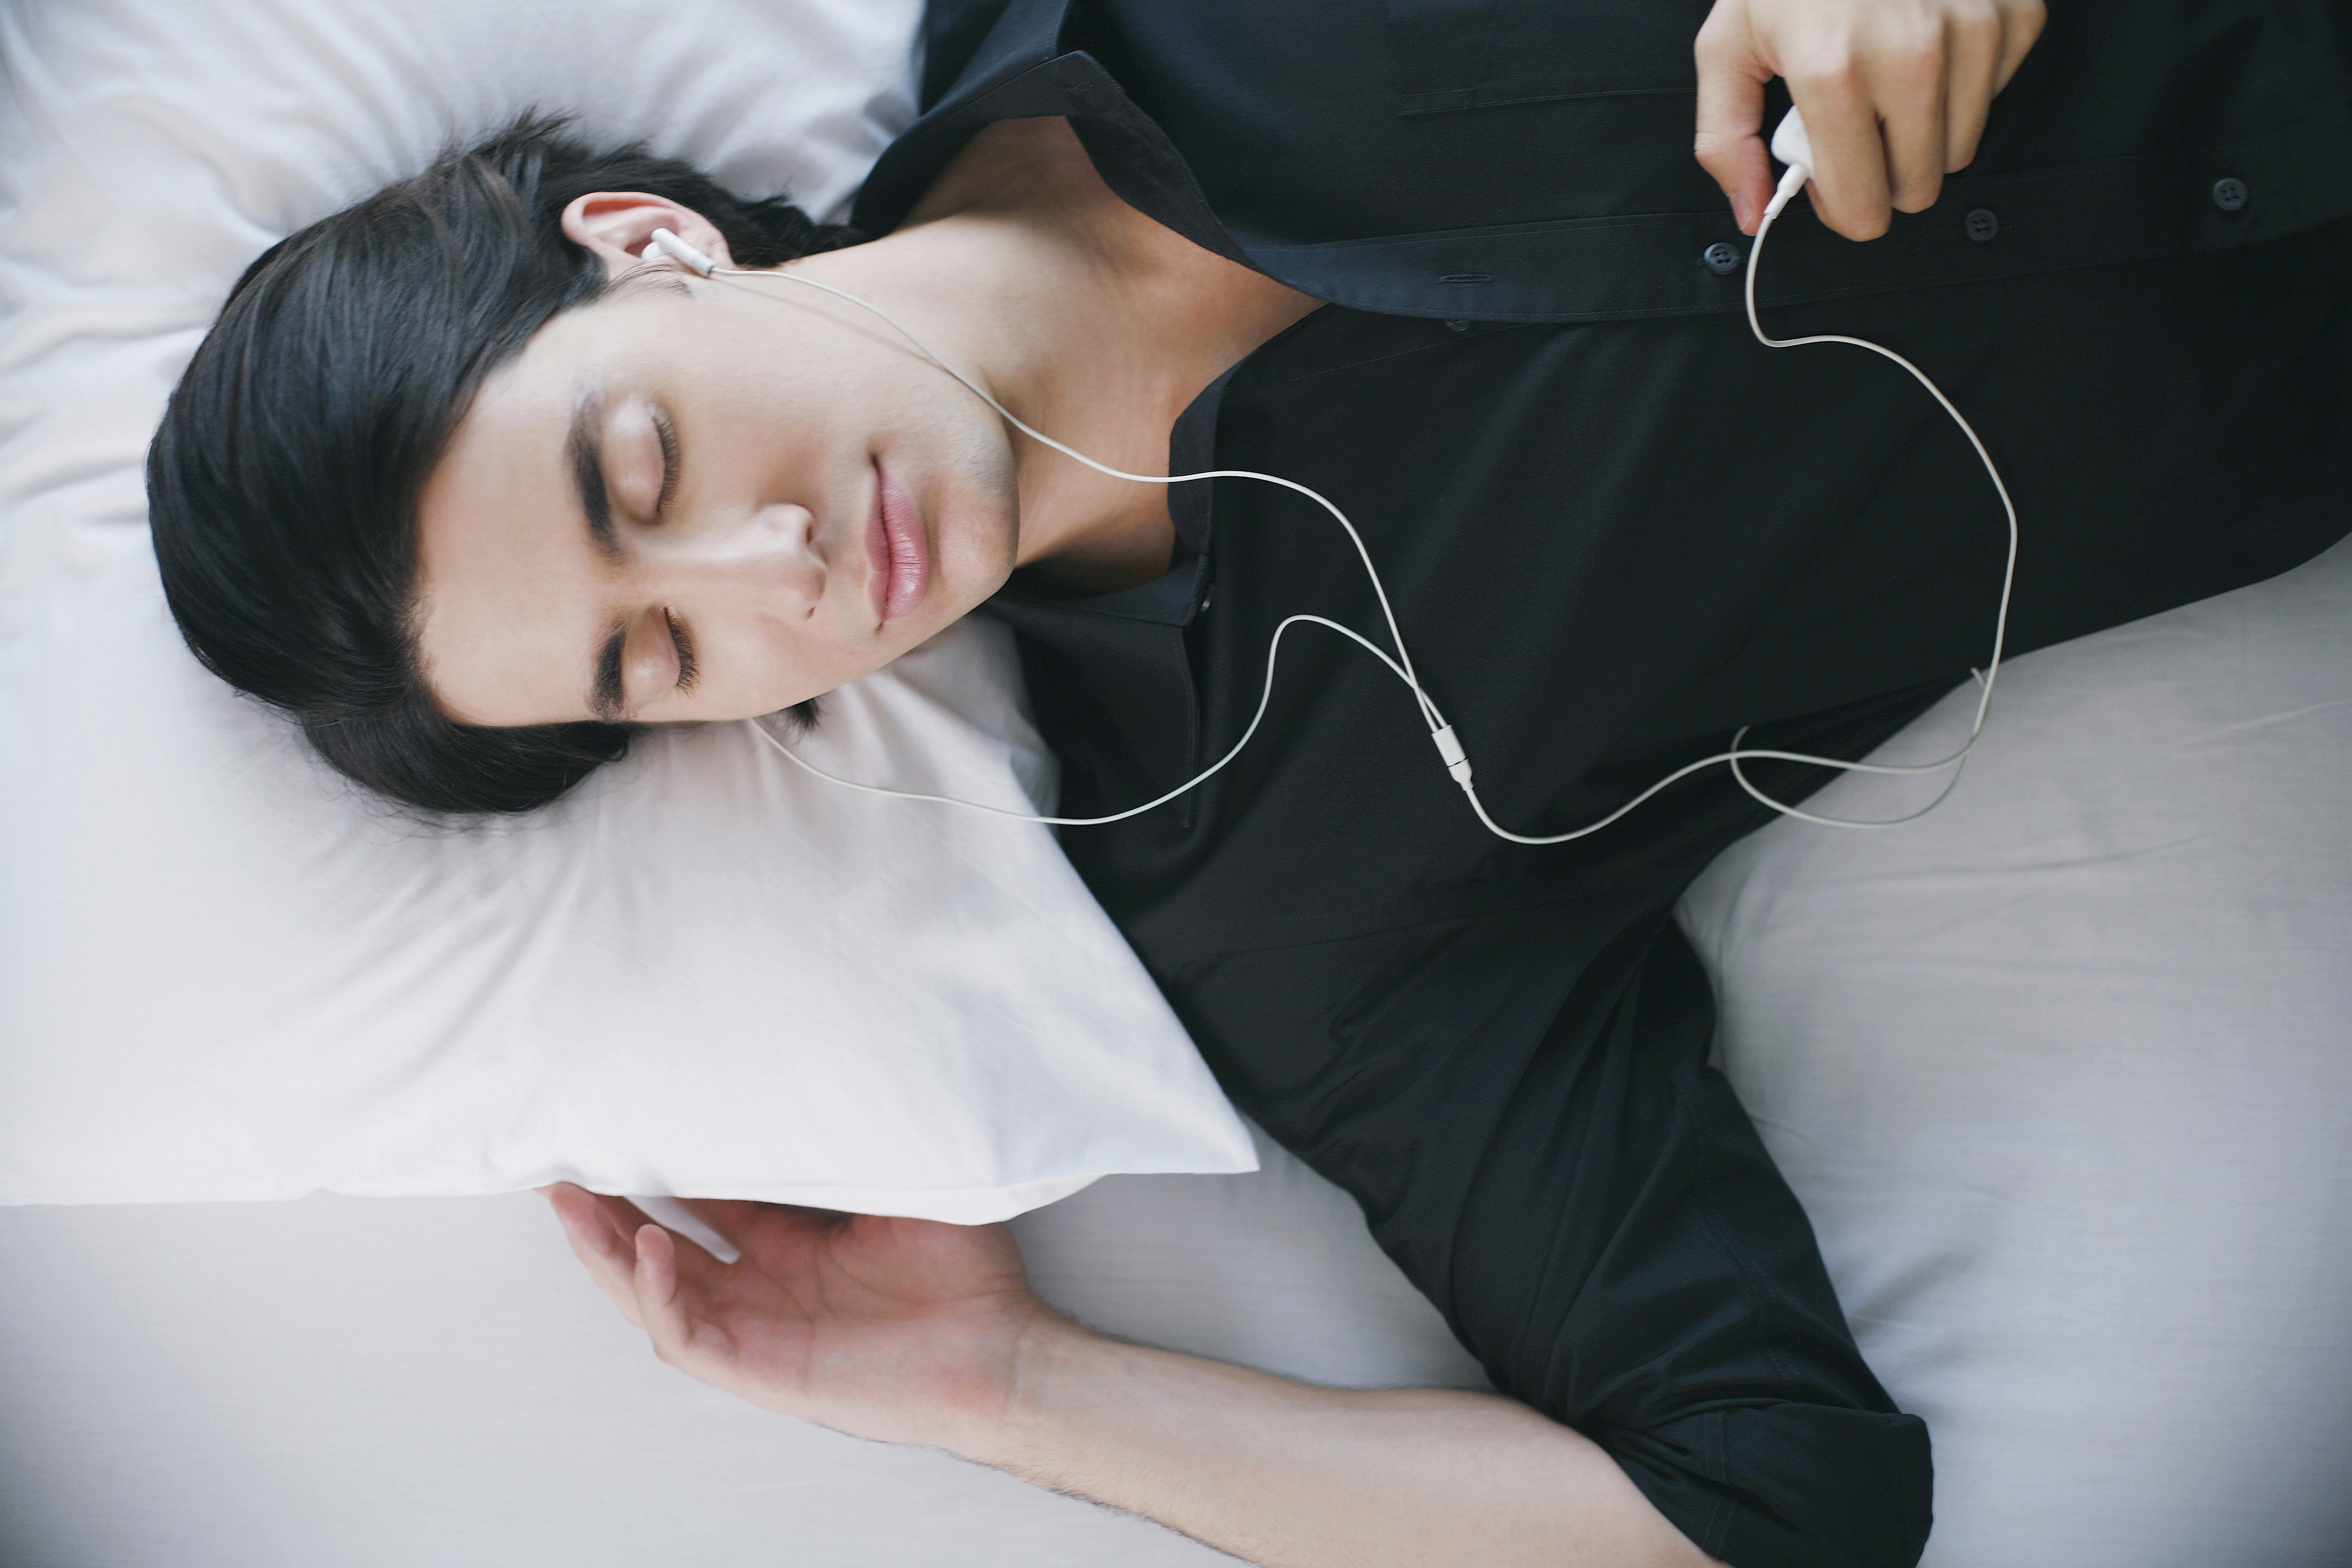 Sleeping woman with earphones- language learning?